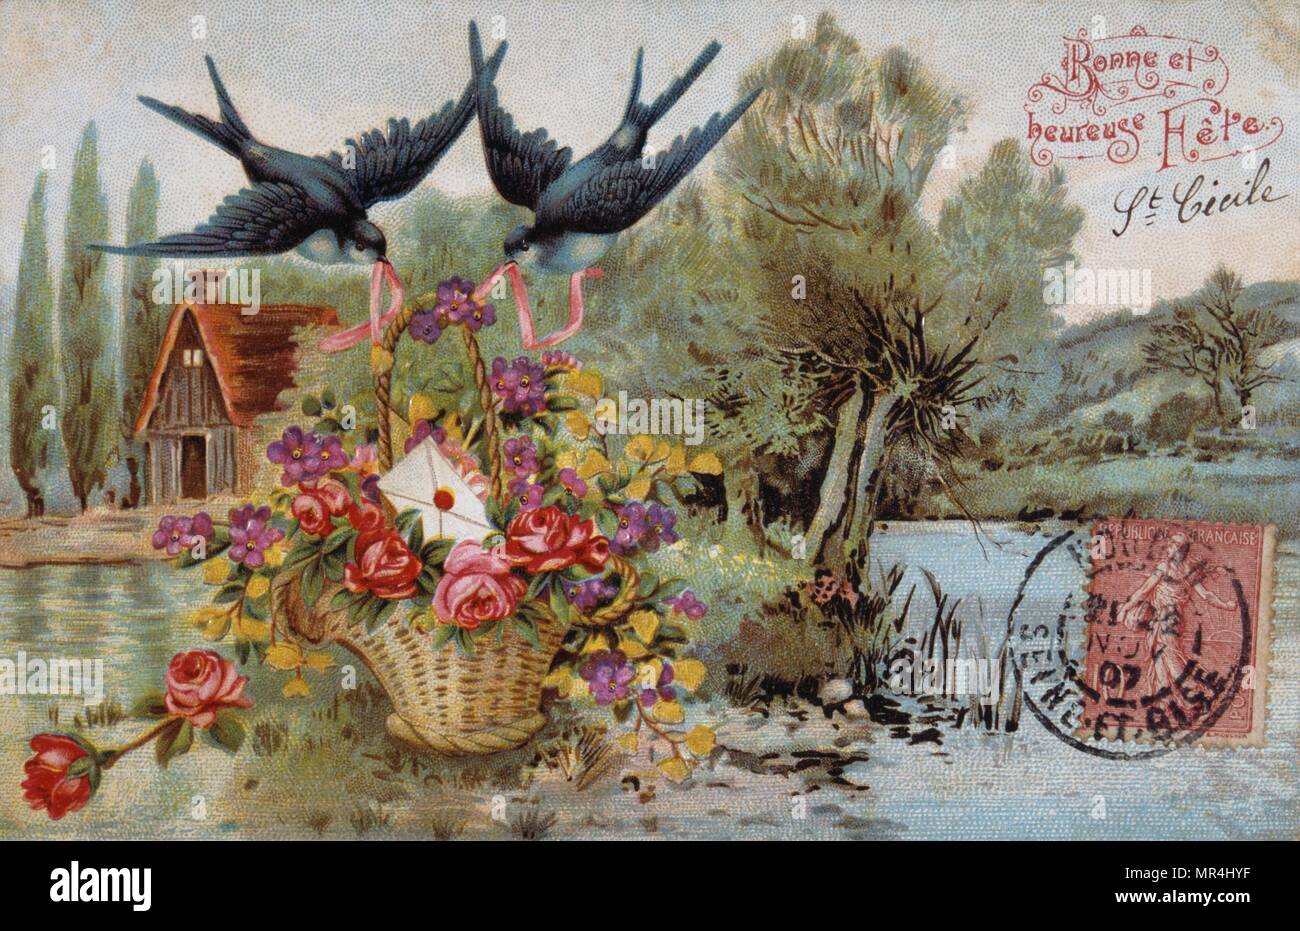 Vintage Franzosische Postkarte Illustriert Mit Vogel Und Einen Korb Mit Blumen 1905 Stockfotografie Alamy